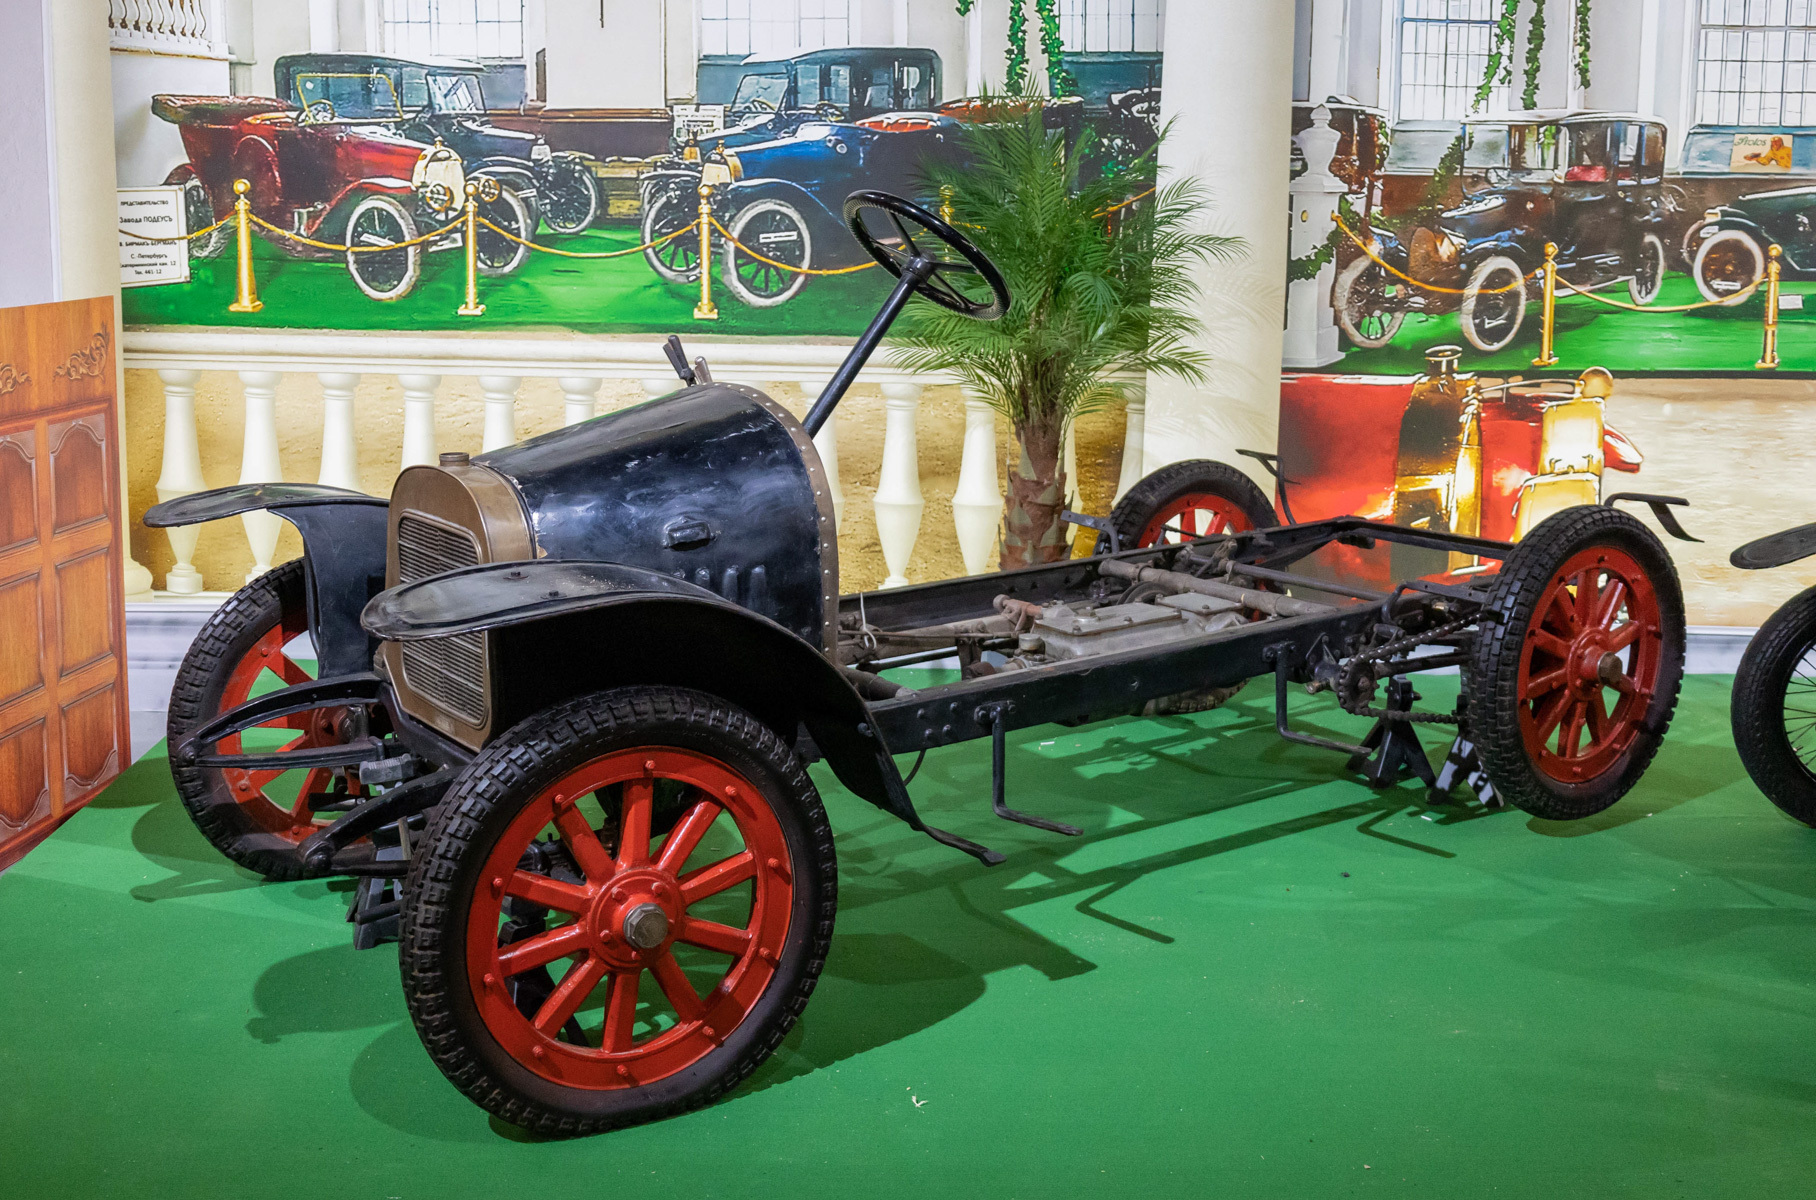 Lion-Peugeot Type VC2 — французский автомобиль, выпускавшийся с 1909 по 1910 год. Марка Lion-Peugeot появилась в 1906 году, когда Эжен, Робер и Пьер Пежо решили заняться производством автомобилей, как и их родственник Арман Пежо. В 1910 году их предприятия были объединены.